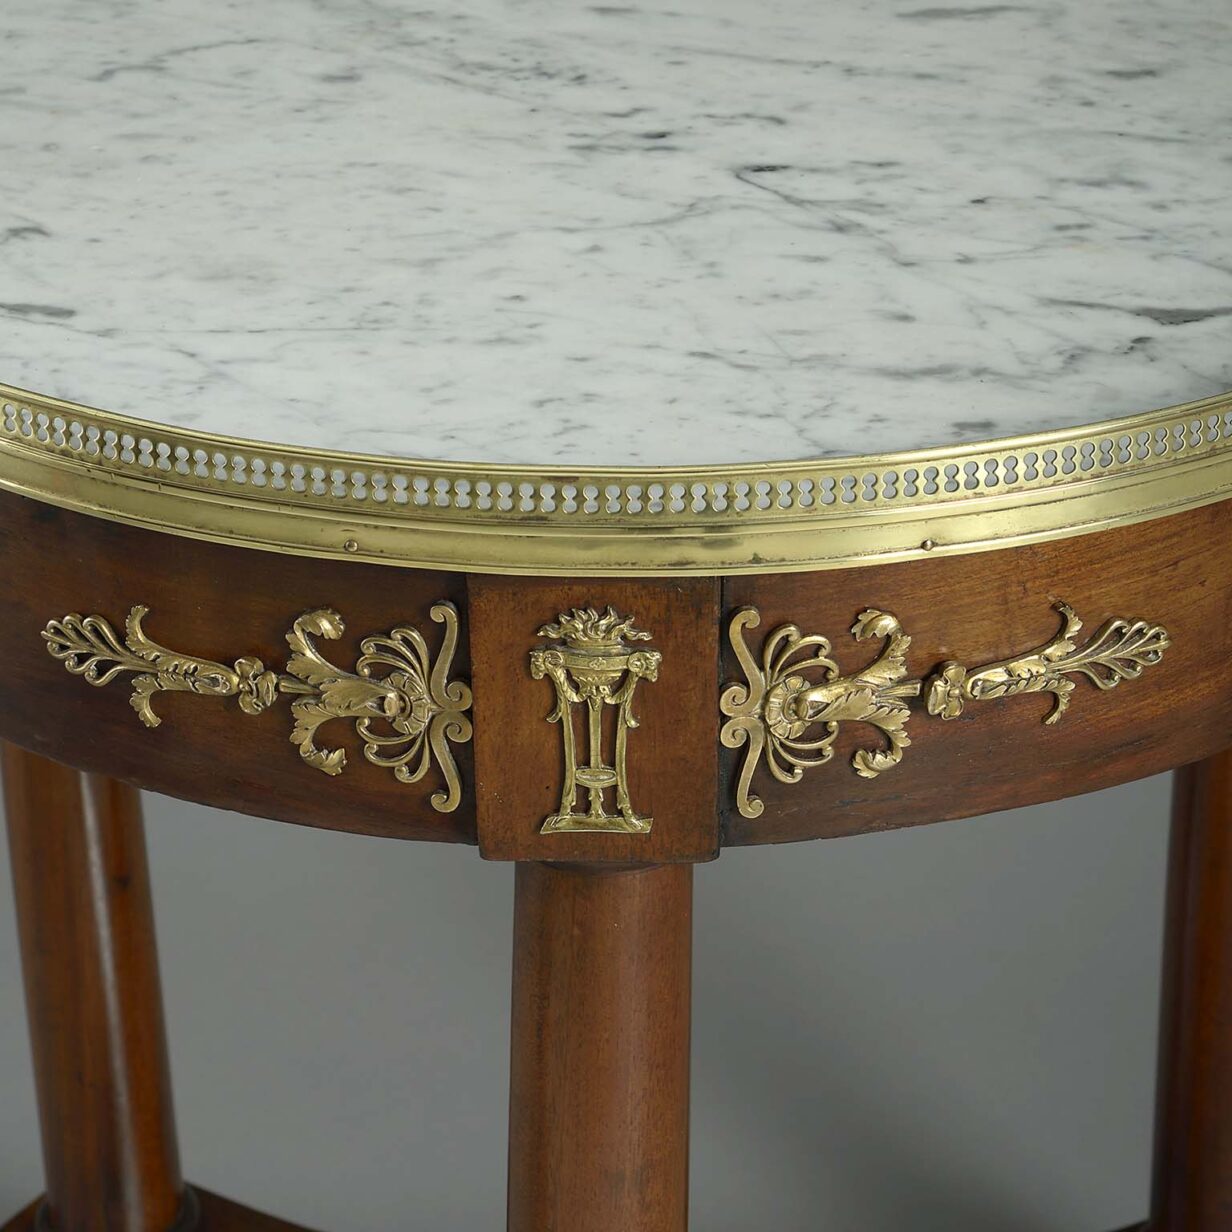 Early 19th century empire period mahogany table